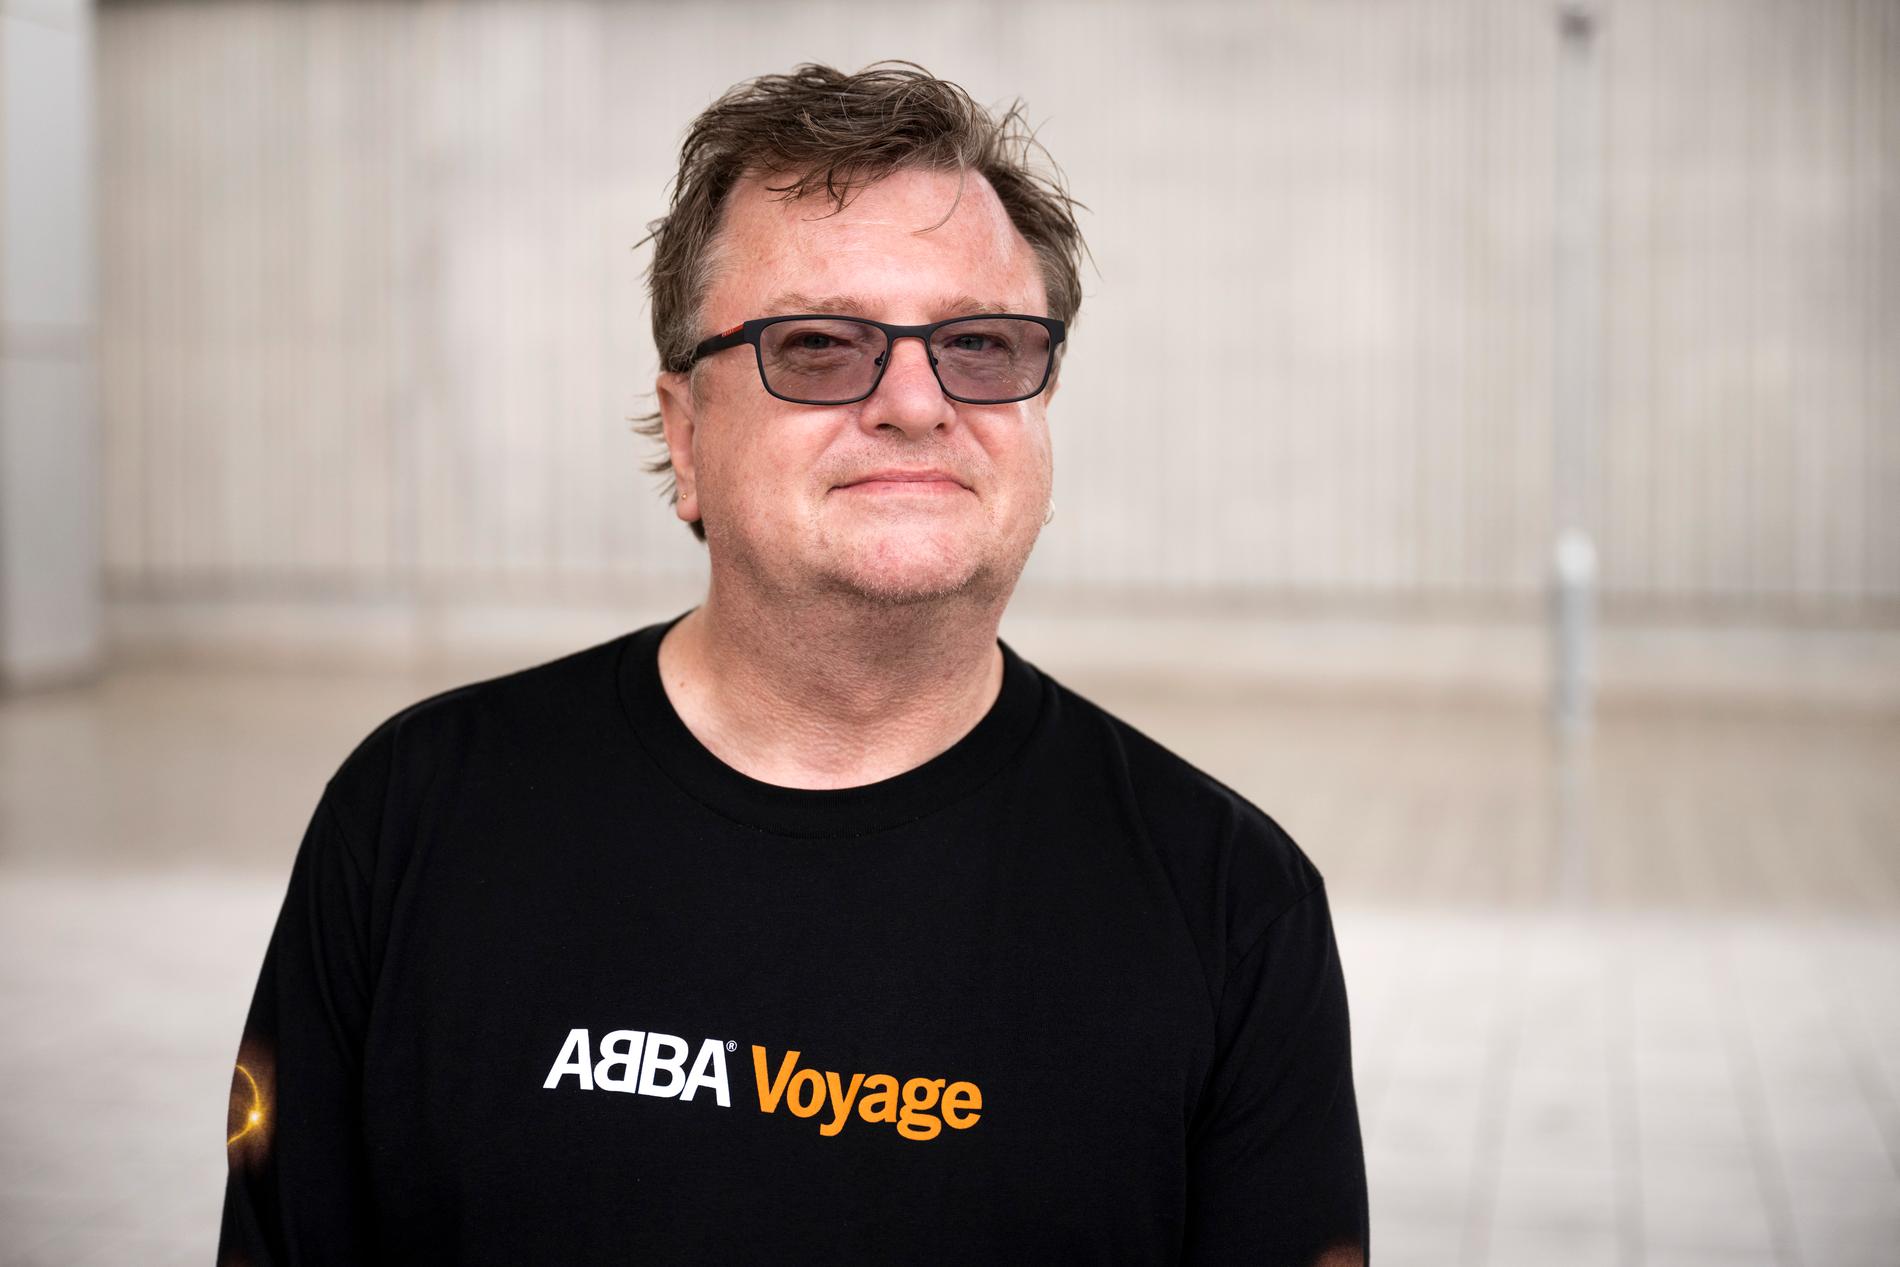 Ian Cole ska se fyra av föreställningarna av "Abba voyage". "Jag hoppas få höra både de största hitsen och mer okända låtar", säger han till TT.